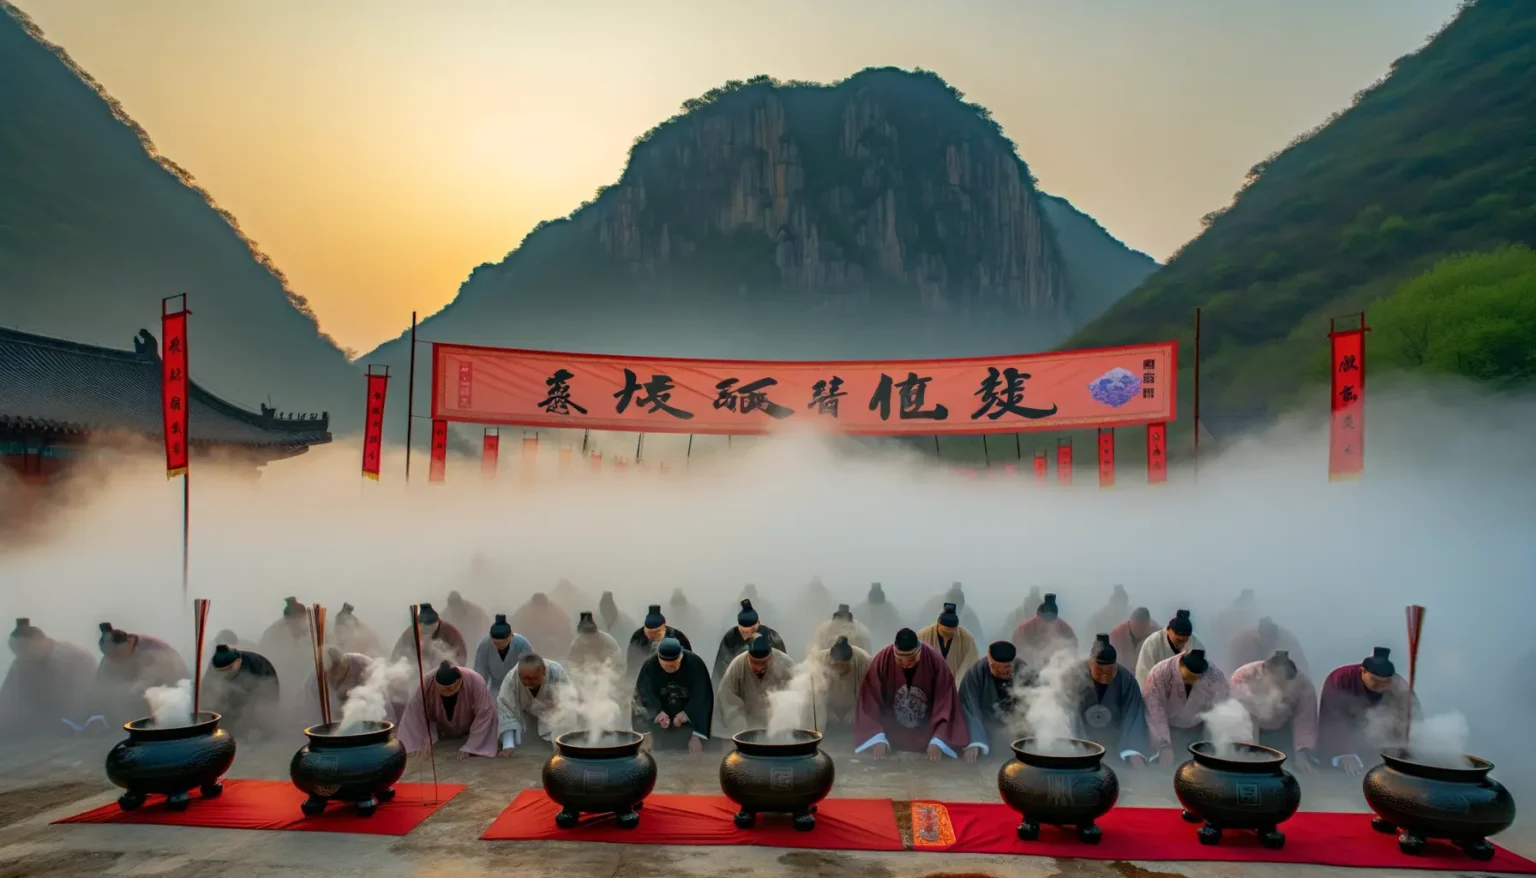 Eine Gruppe von Menschen in traditioneller ostasiatischer Kleidung verneigt sich in einer Zeremonie vor Kesseln mit aufsteigendem Rauch, vor der Kulisse eines großen roten Banners mit chinesischen Zeichen, umrahmt von grünen Bergen und einem Sonnenuntergang.